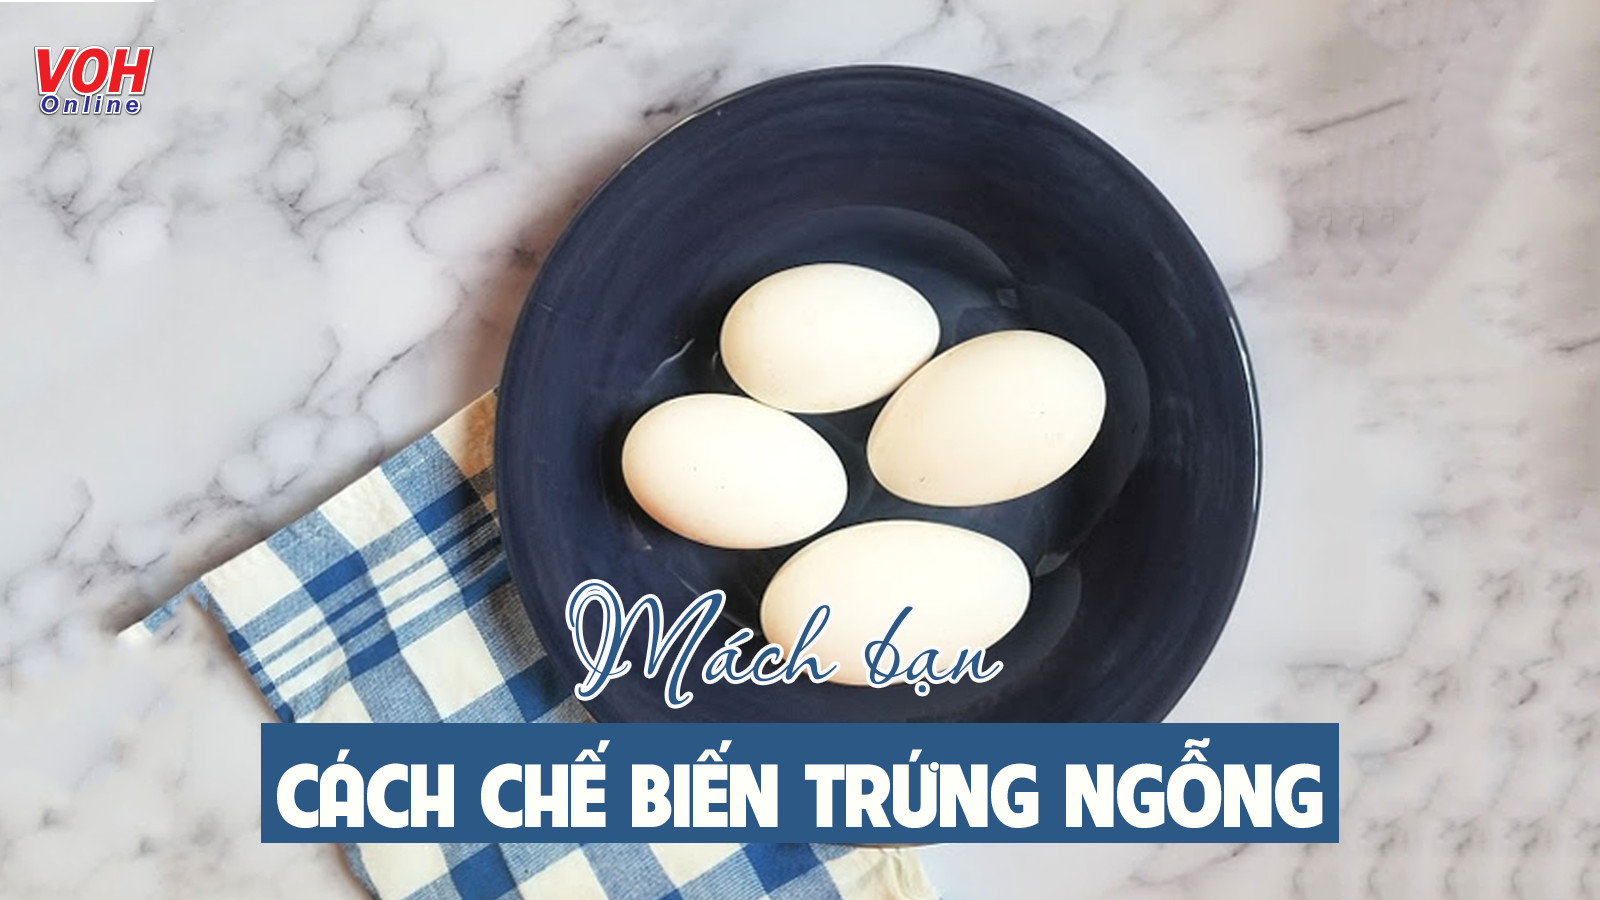 Trứng ngỗng kỵ gì? Ai không nên ăn trứng ngỗng ảnh hưởng sức khoẻ?